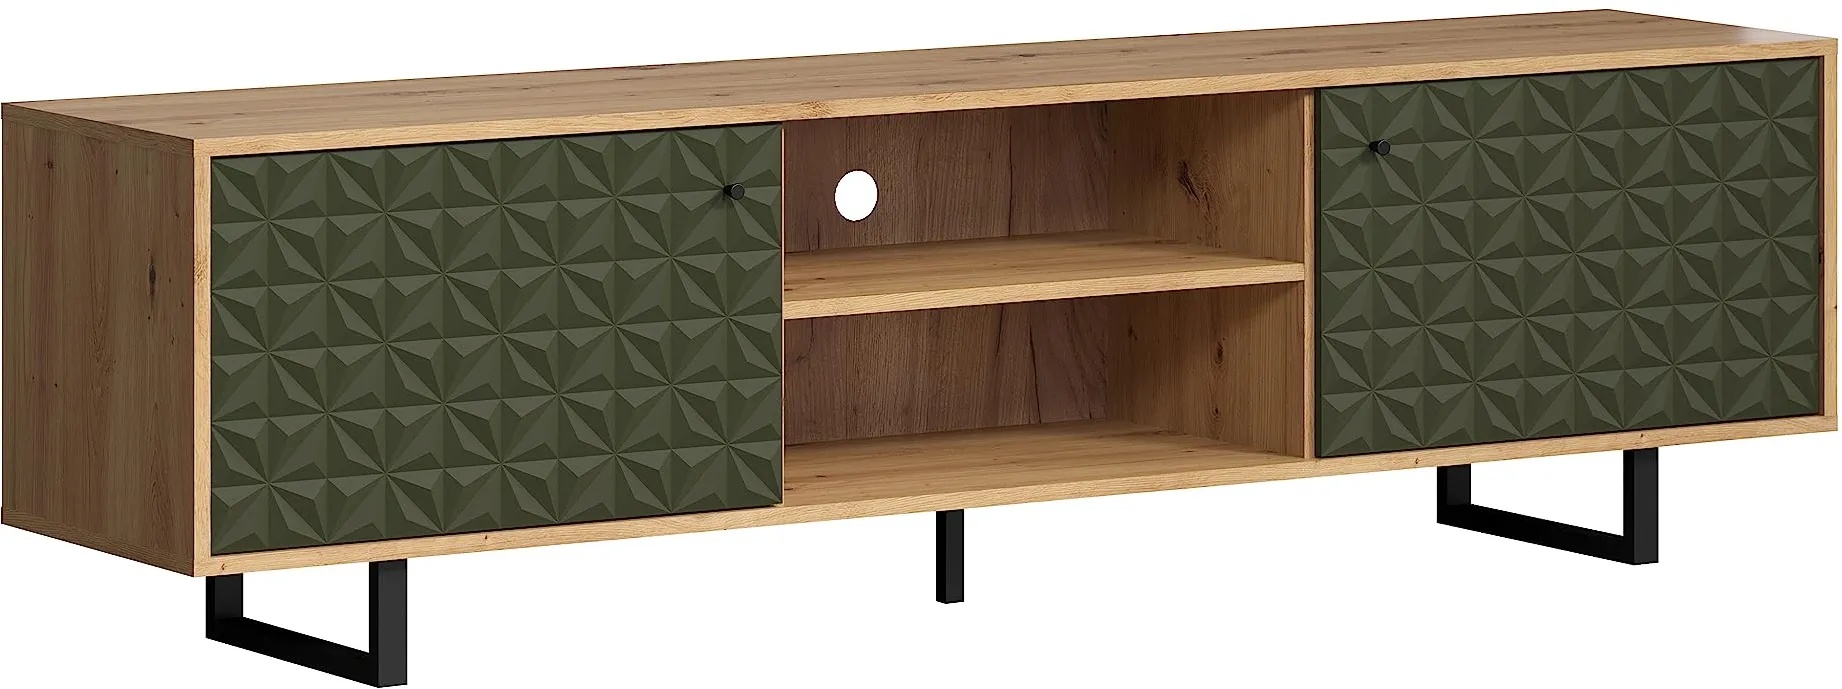 trendteam smart living - TV-Lowboard - Wohnzimmer - Sentra - Aufbaumaß (BxHxT) 184 x 52 x 40 cm - Farbe Dark Green mit Artisan Eiche - 224031982